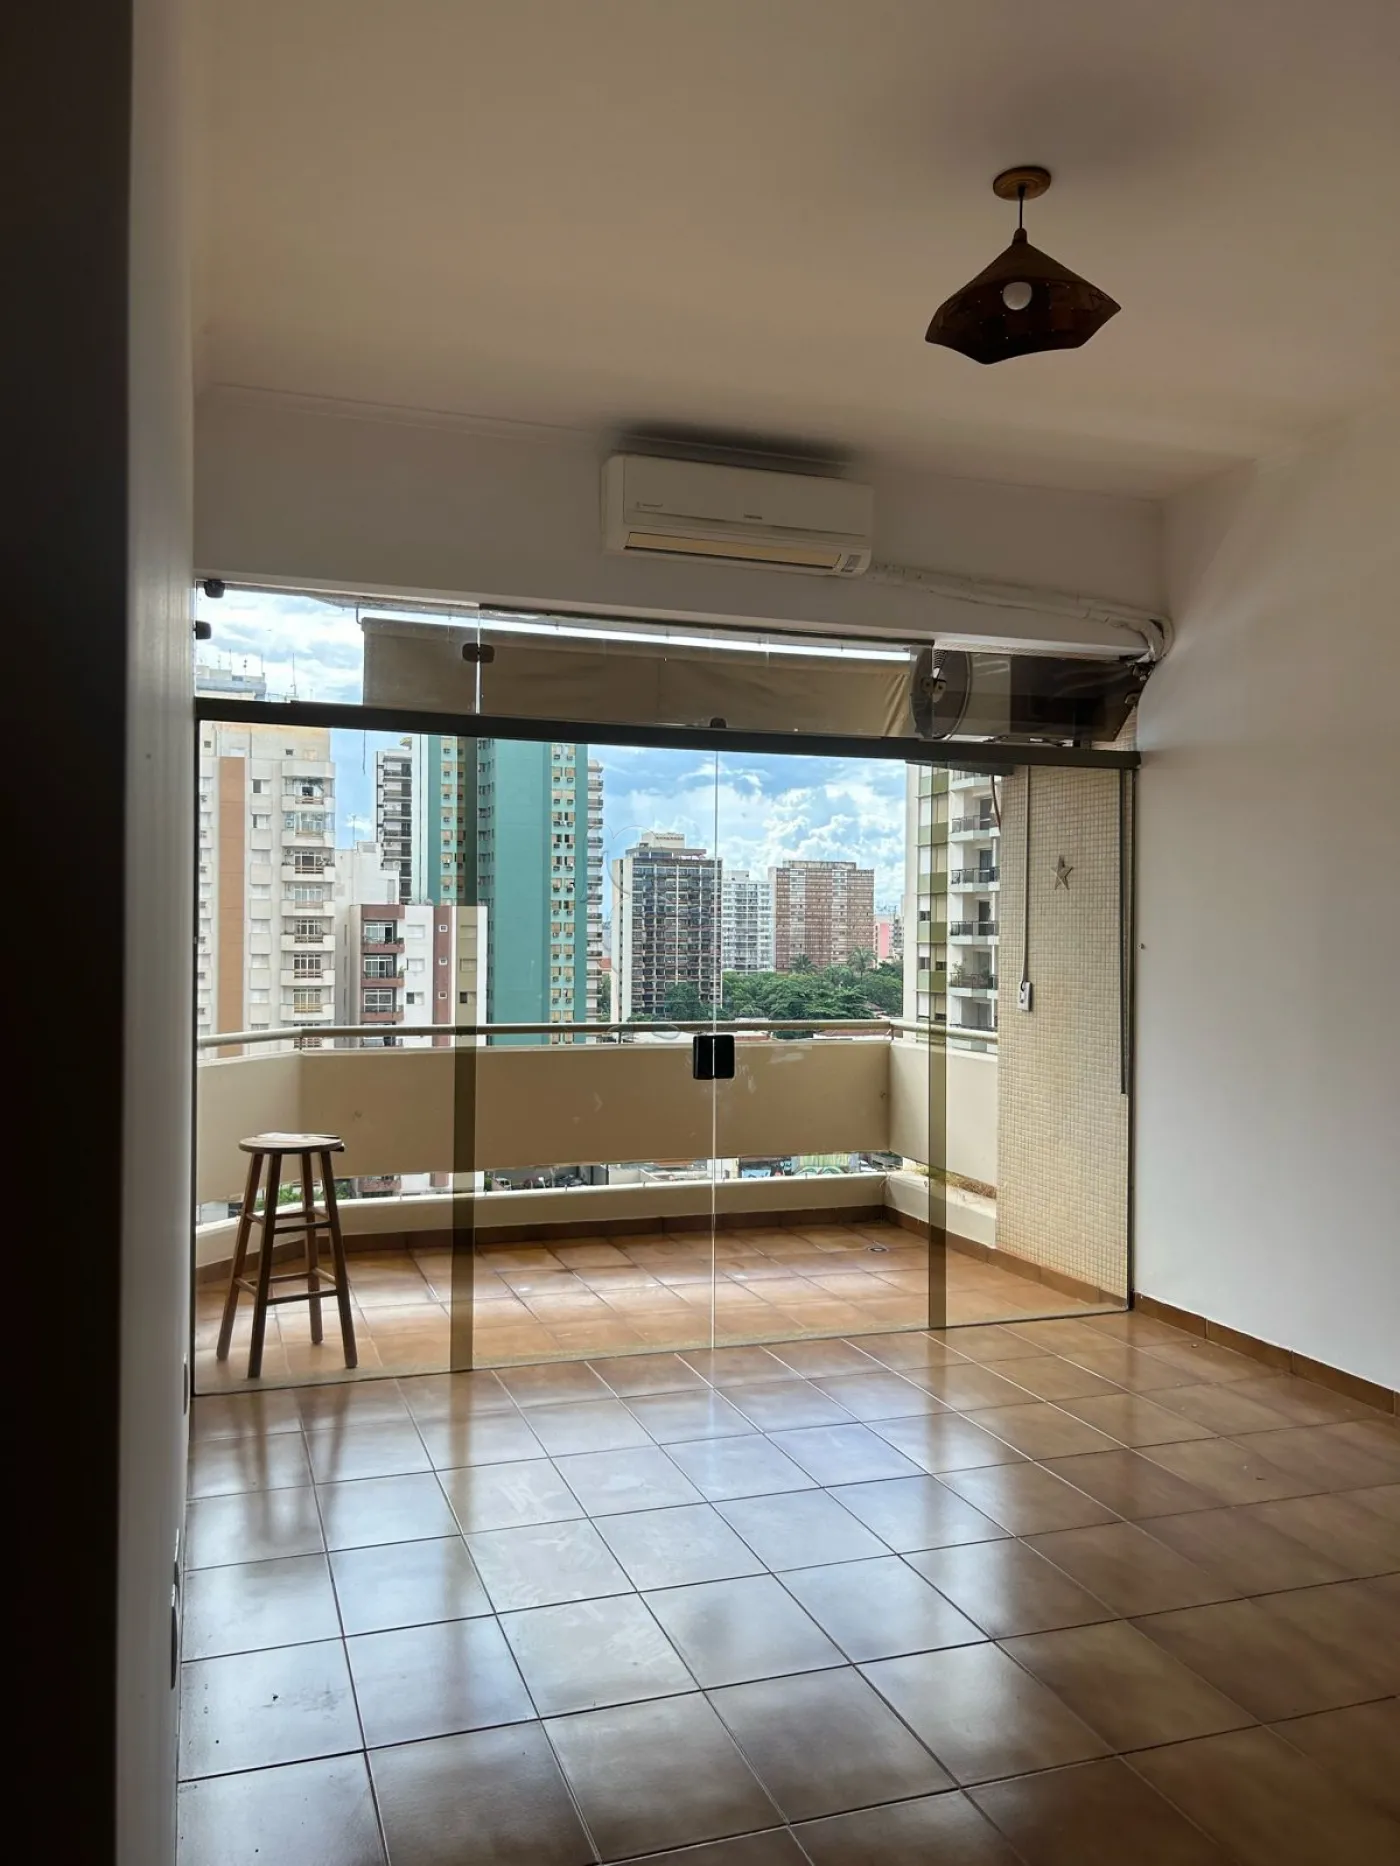 Alugar Apartamentos / Padrão em Ribeirão Preto R$ 3.000,00 - Foto 2